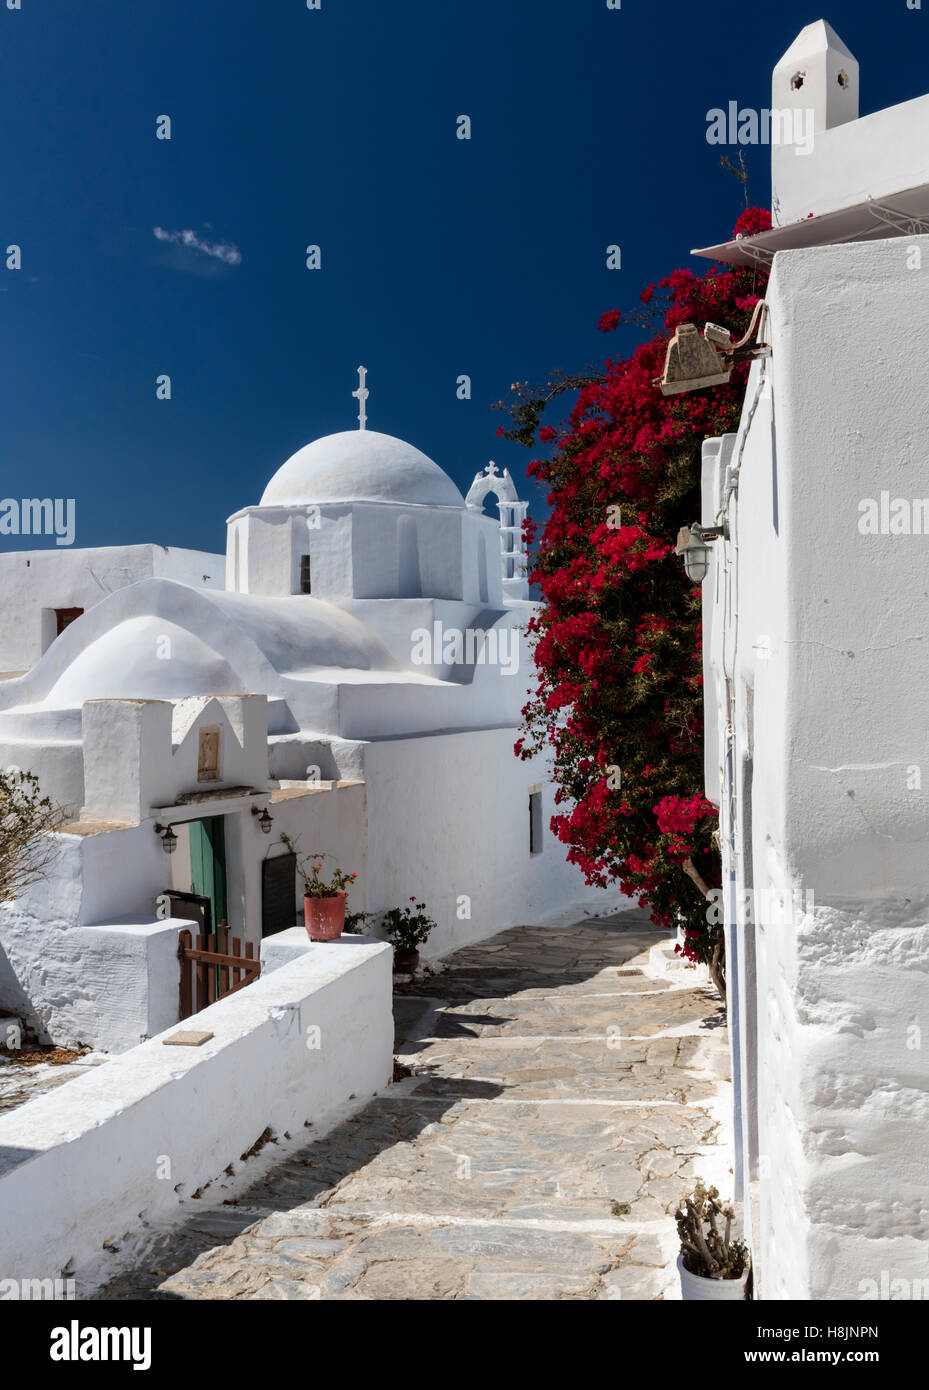 In pietra dipinta di bianco villaggio di Chora (Hora) su amorgos nelle isole Cicladi della Grecia con chiesa duomo, bouganville e case Foto Stock